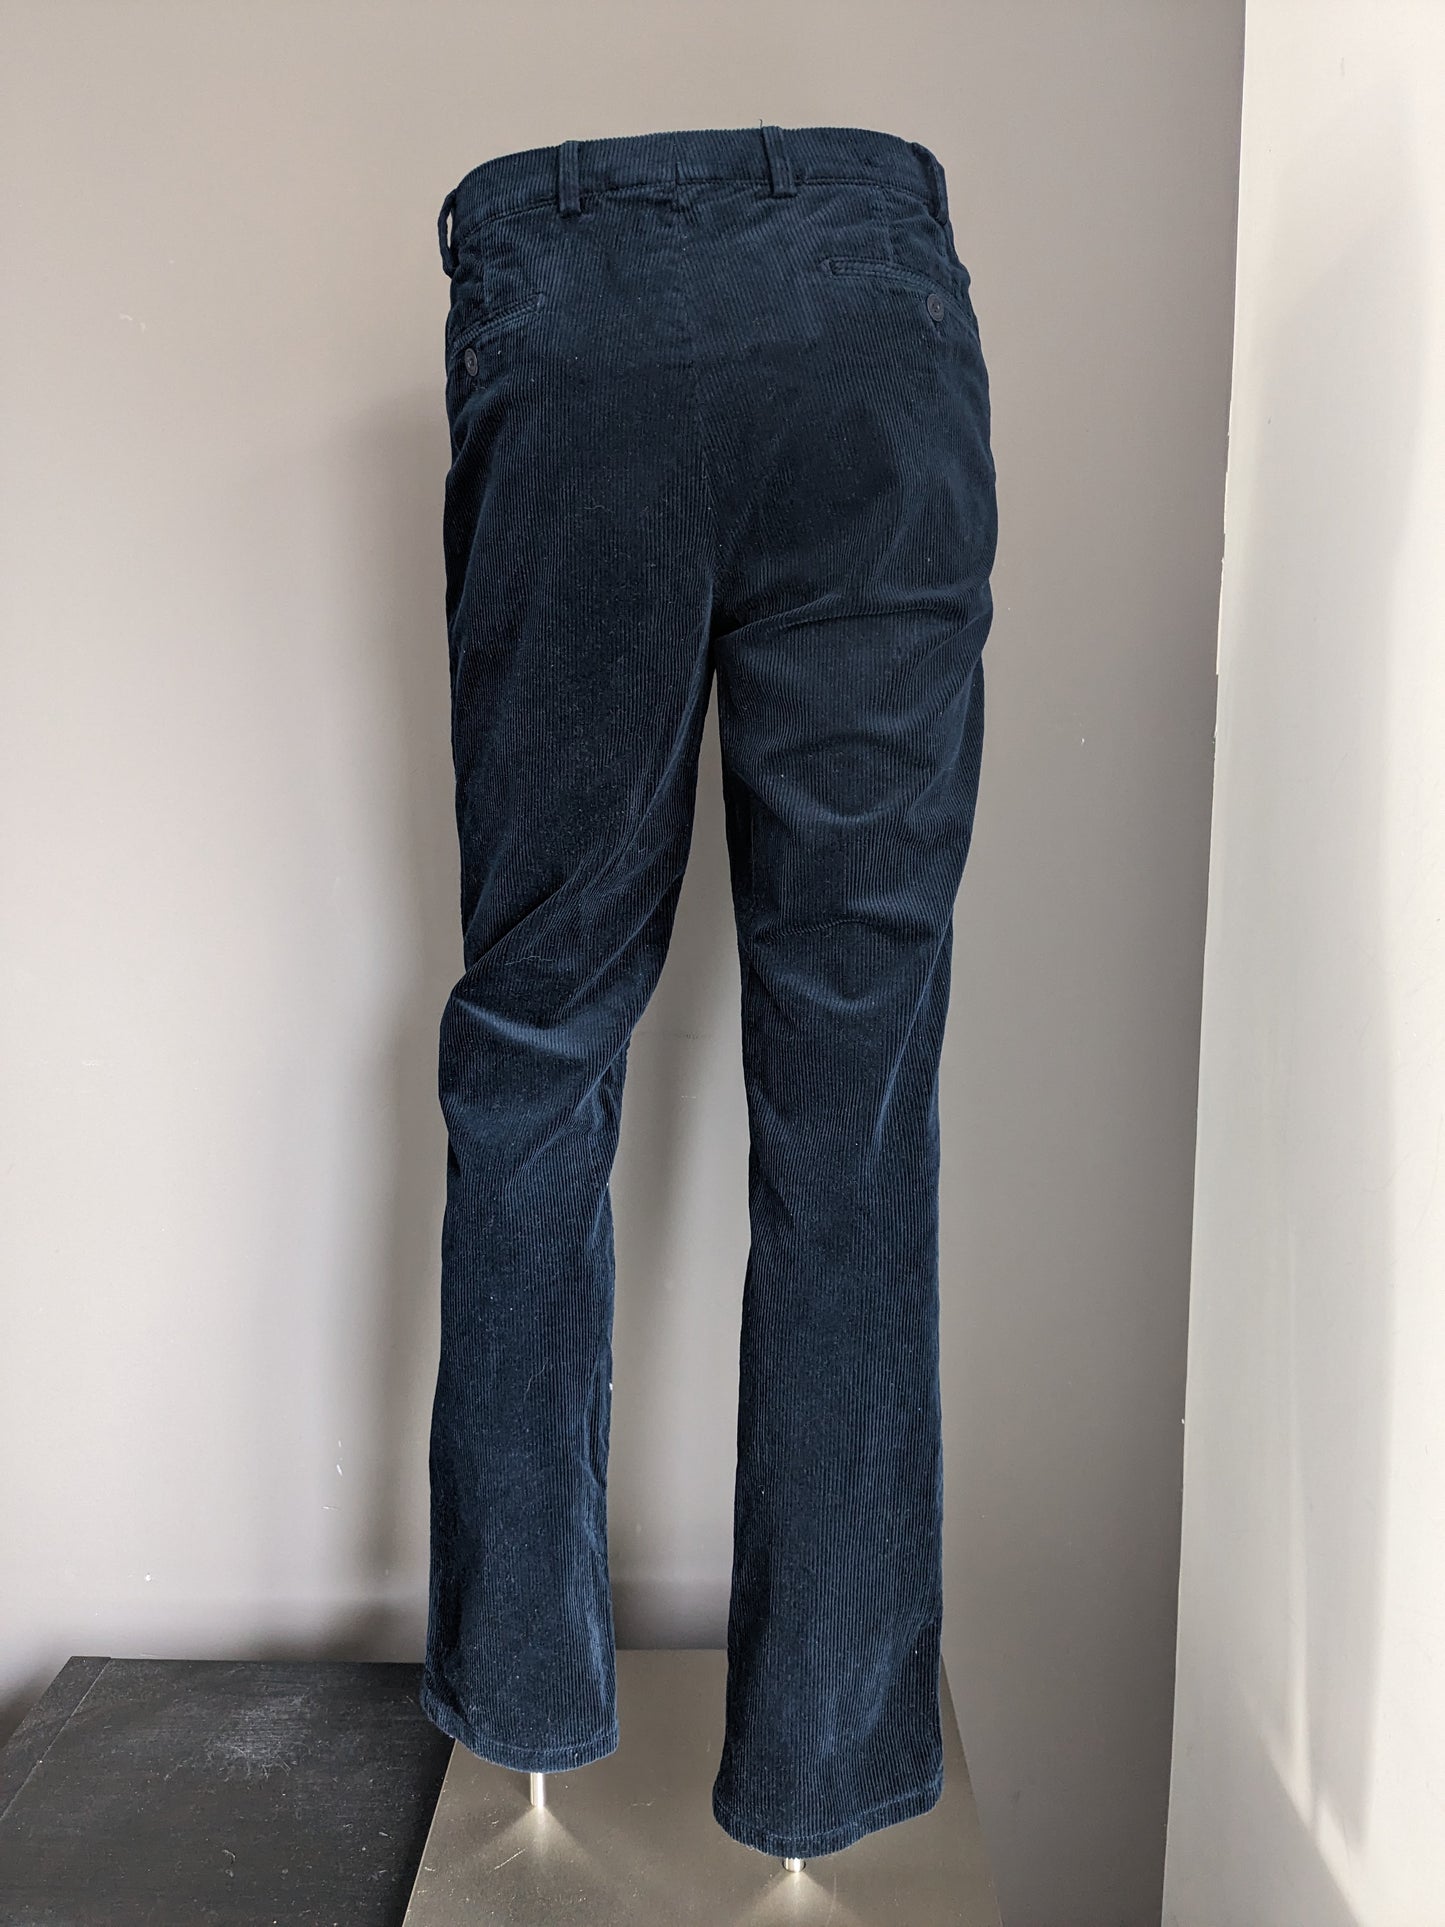 Meyer Pantalones de costilla exclusiva. Color azul oscuro. Tamaño 52 / L.